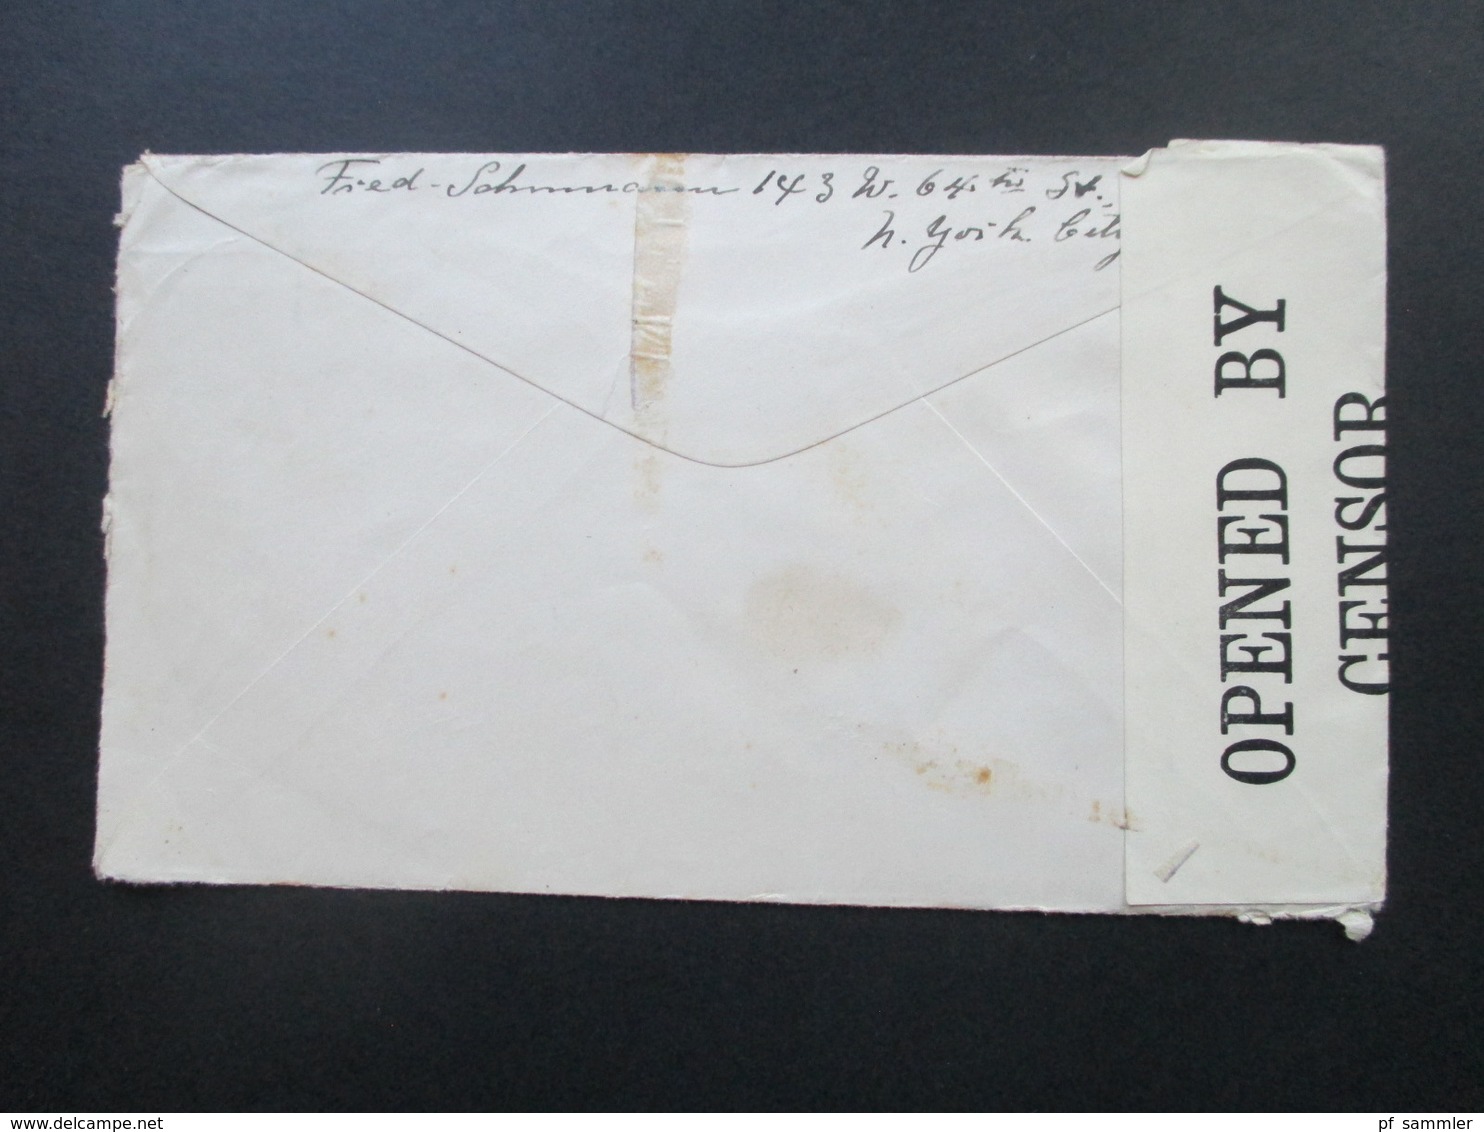 USA 1916 Brief Von New York Nach Weimar Schiffspost?? Oscar II Opened By Censor 4378 / Zensurbrief - Briefe U. Dokumente